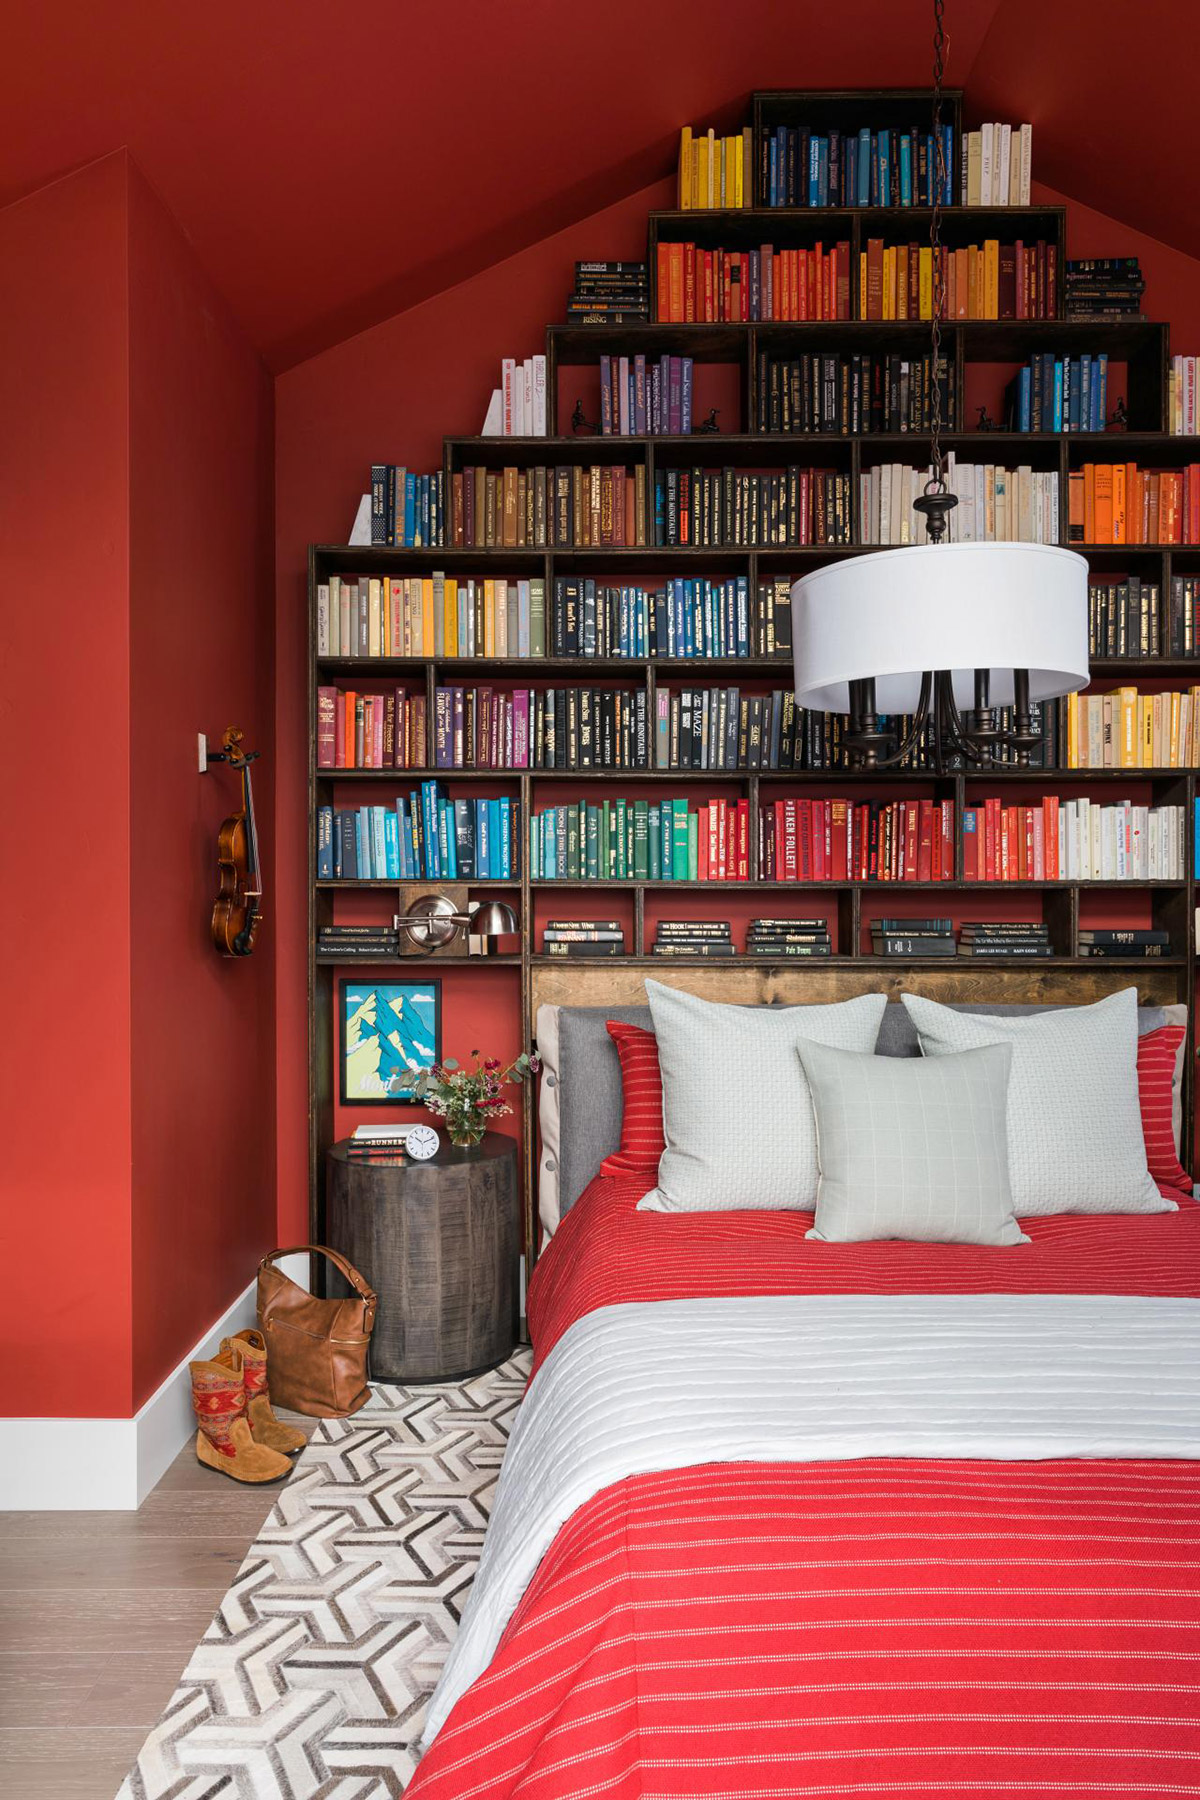 Đây quả thực là căn phòng hoàn hảo cho những ai yêu đọc sách. Toàn bộ tường được sơn màu đỏ kết hợp với bộ ga gối vô cùng ấm áp. Phần đầu giường thiết kế kệ sách mở như một thư viện tại gia cực kỳ thú vị.